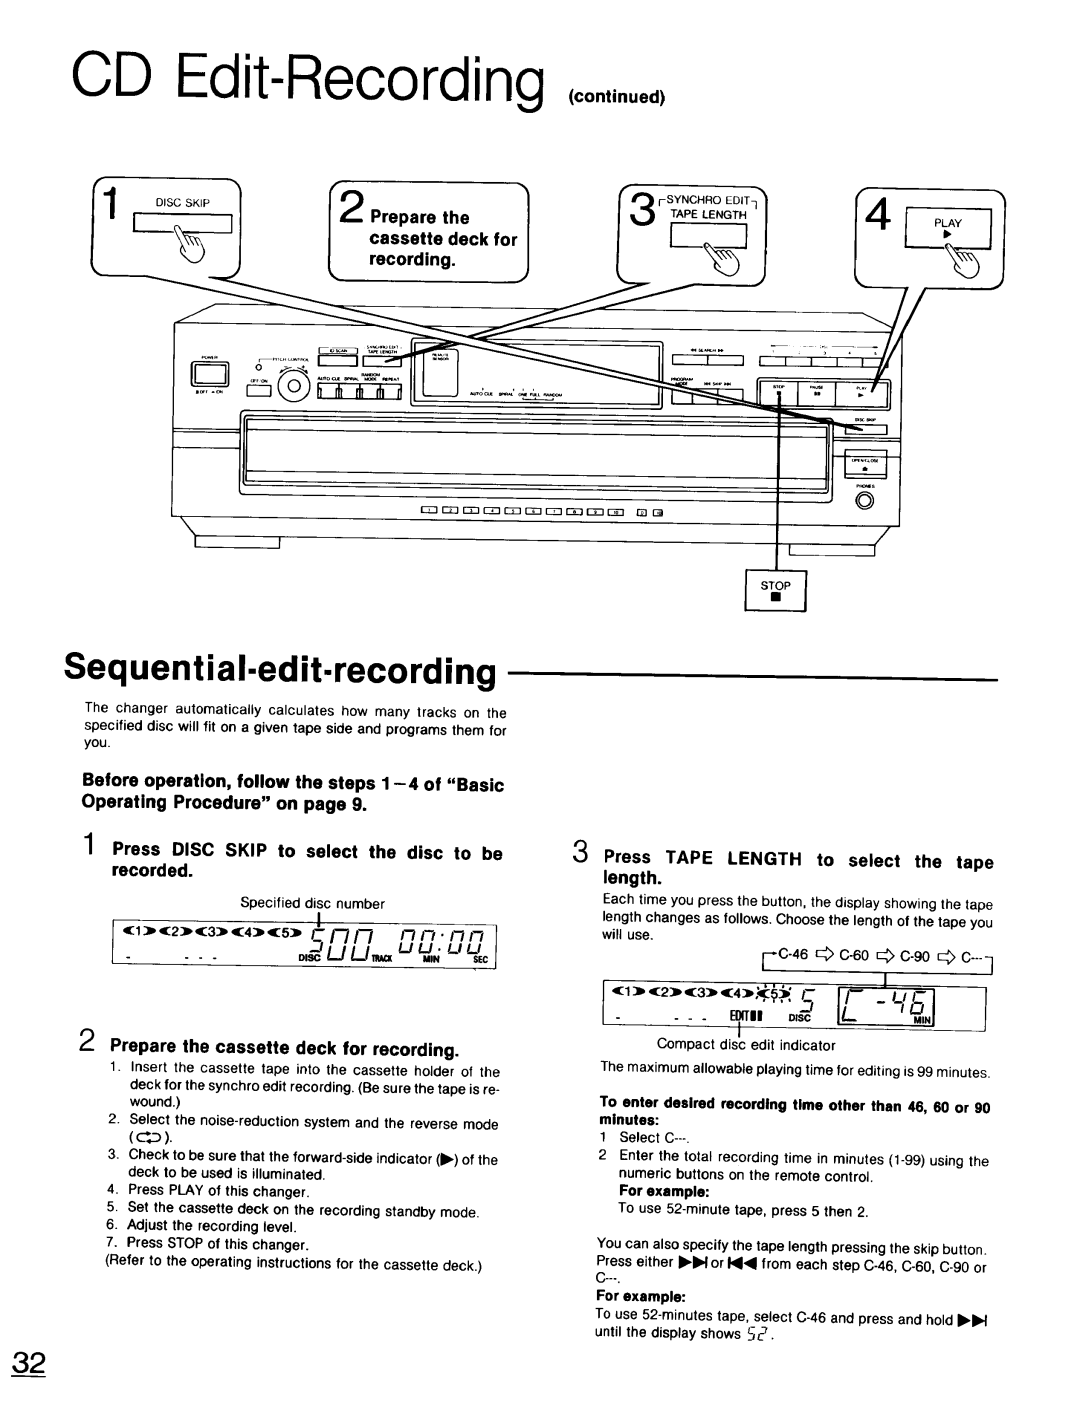 Technics SL-PD947 CD Edit-Recording ,co.,,.u, Sequential-edit-recording, o,ocIL, I-C-46 c-80 c-9o C, o,= / JL/T.=, Prepare 